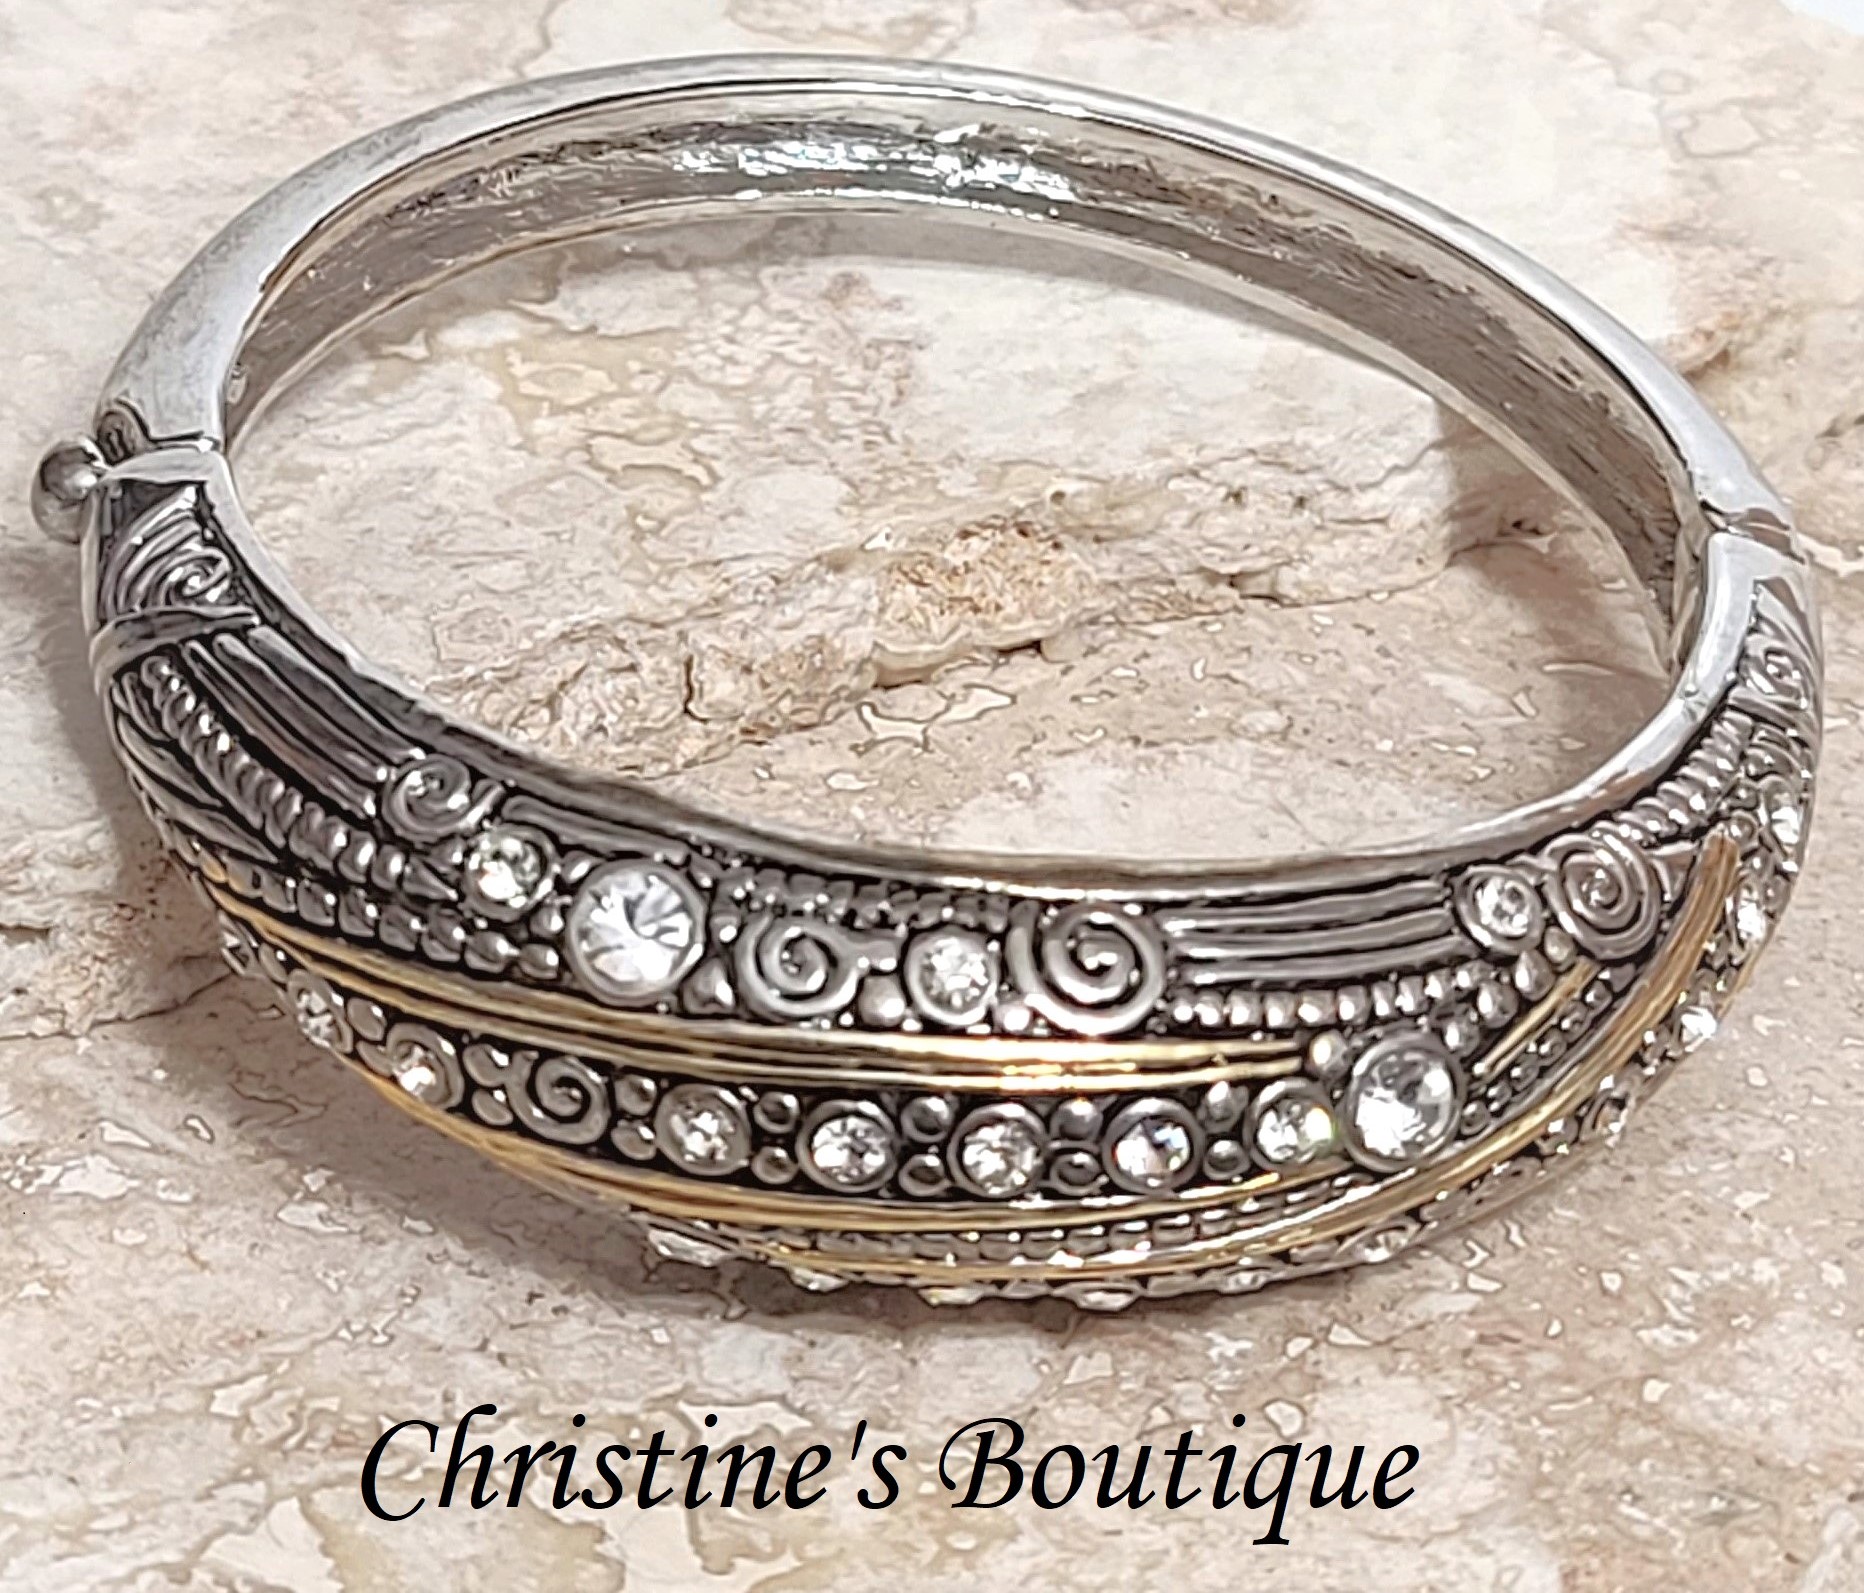 Rhinestone bangle bracelet, two tone gold and silver fashion bracelet